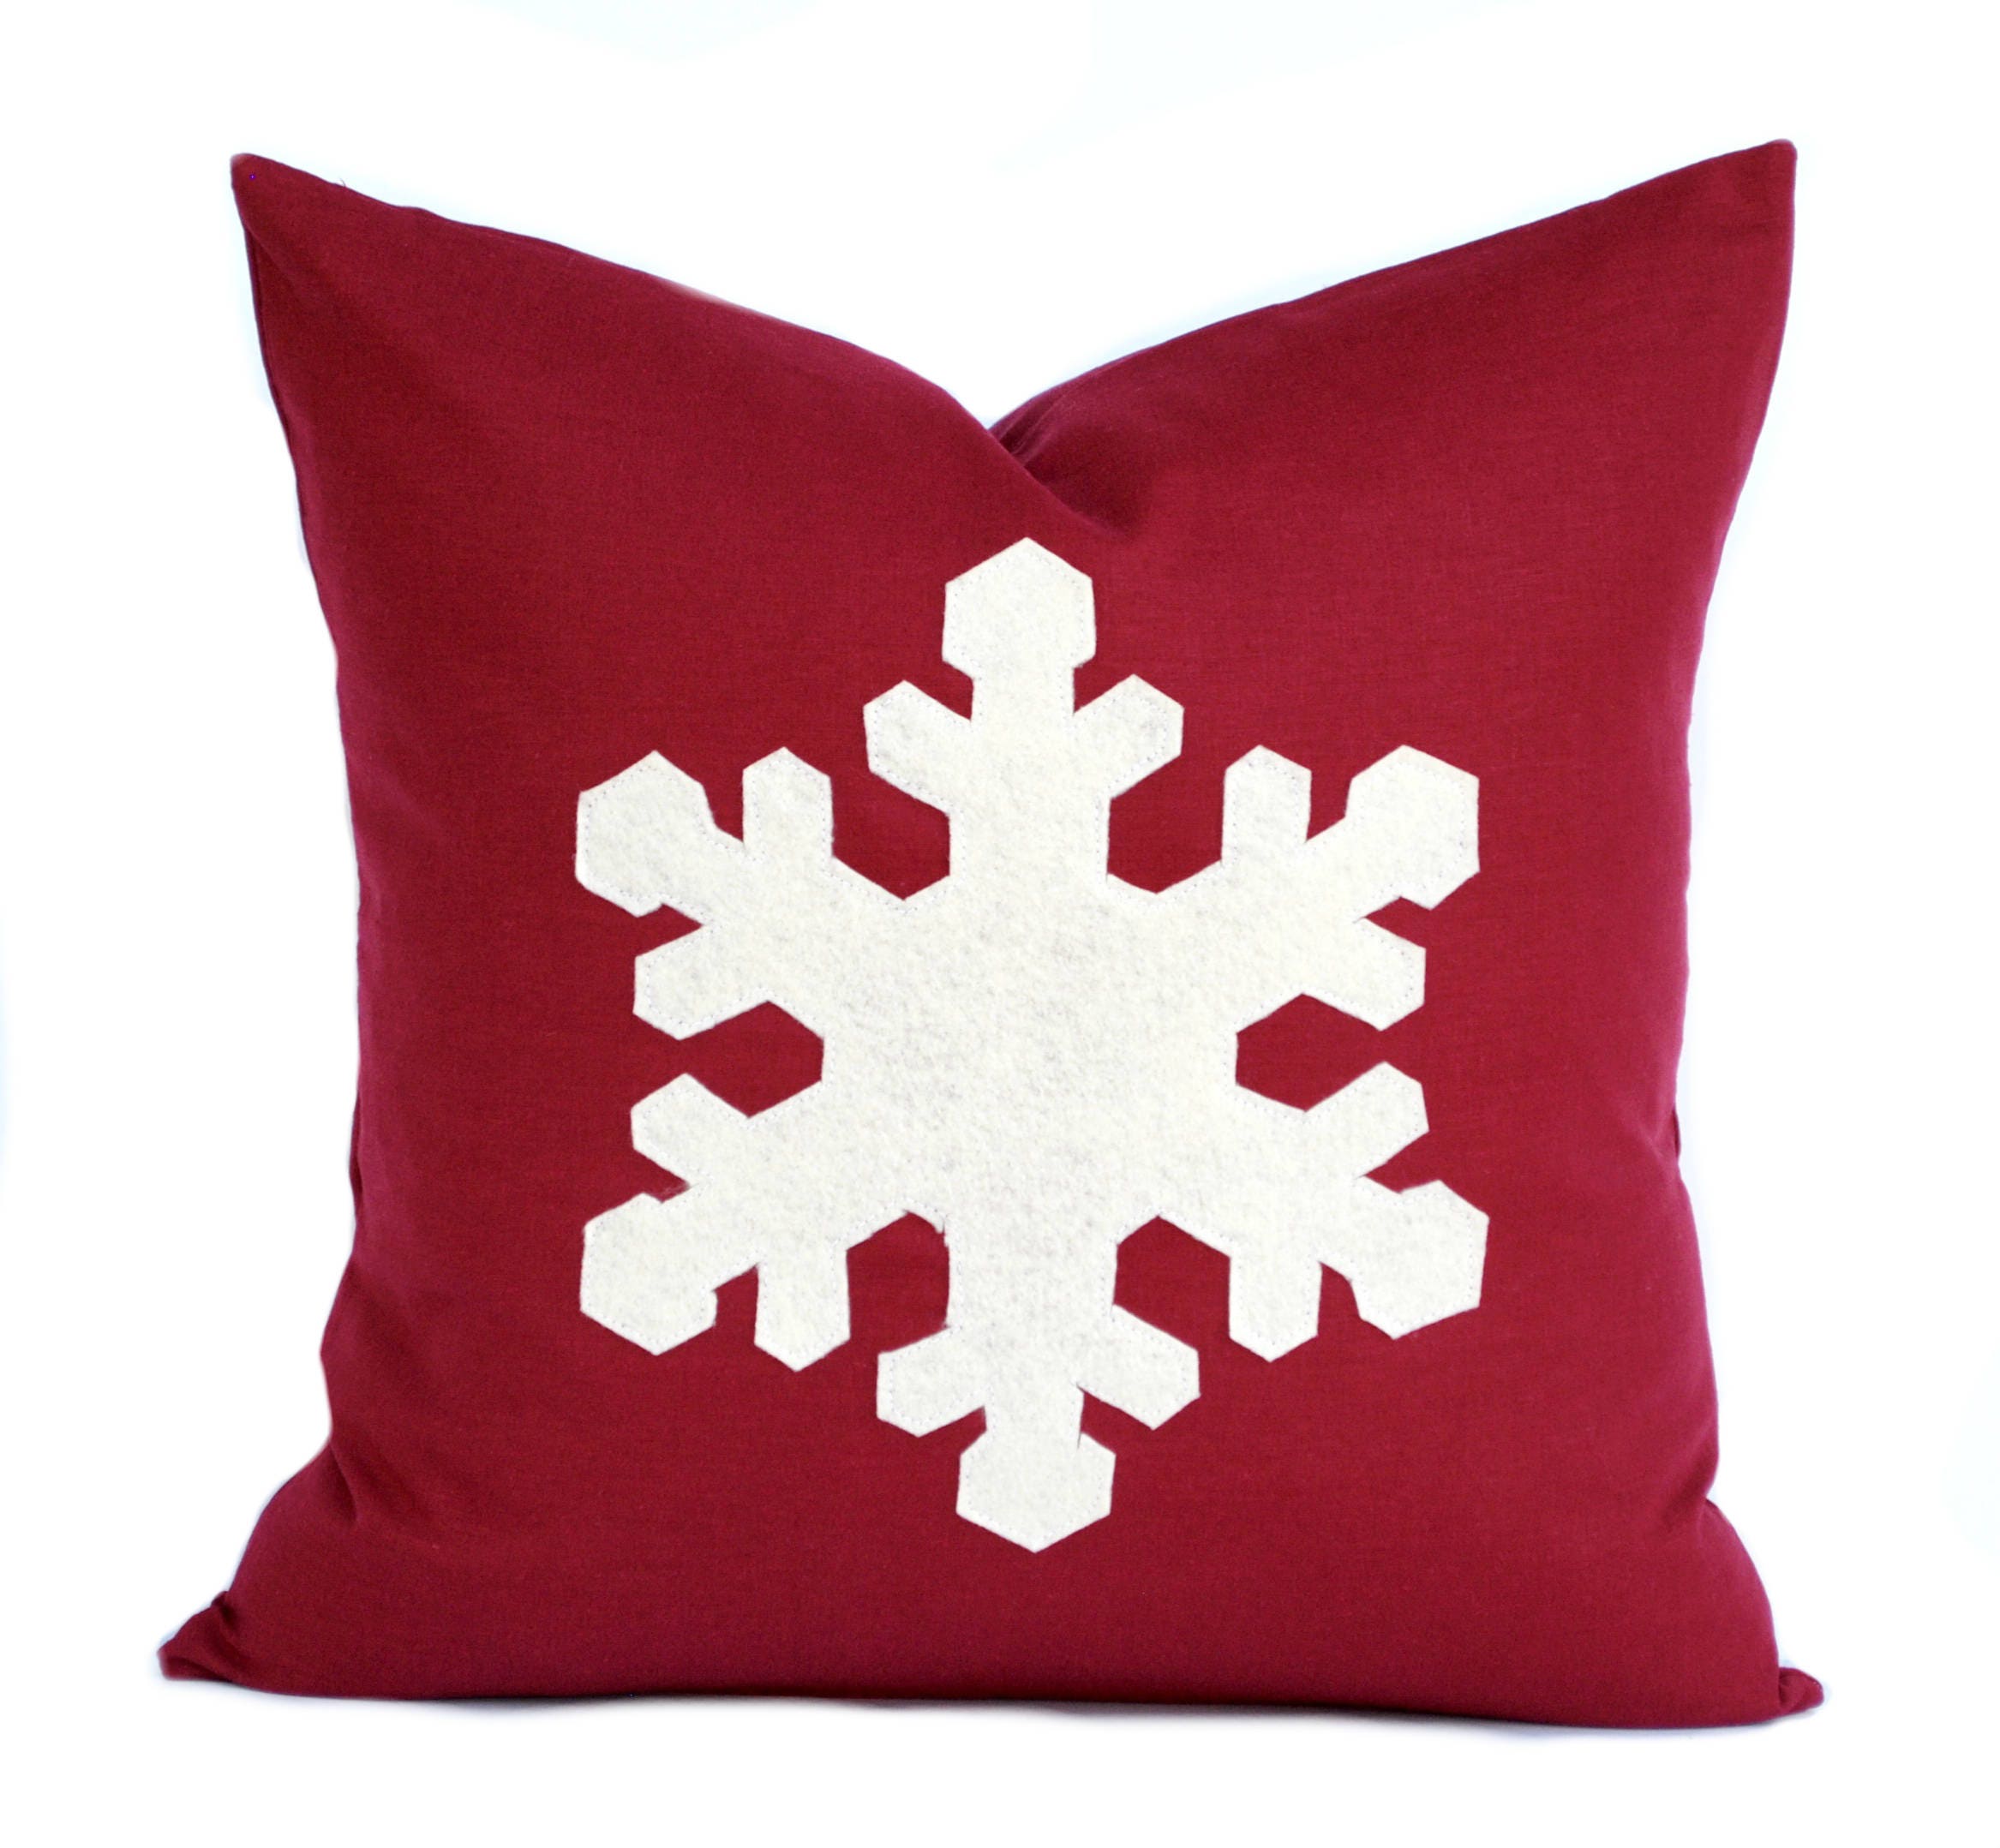 Snowflake Christmas Pillow Printable Post